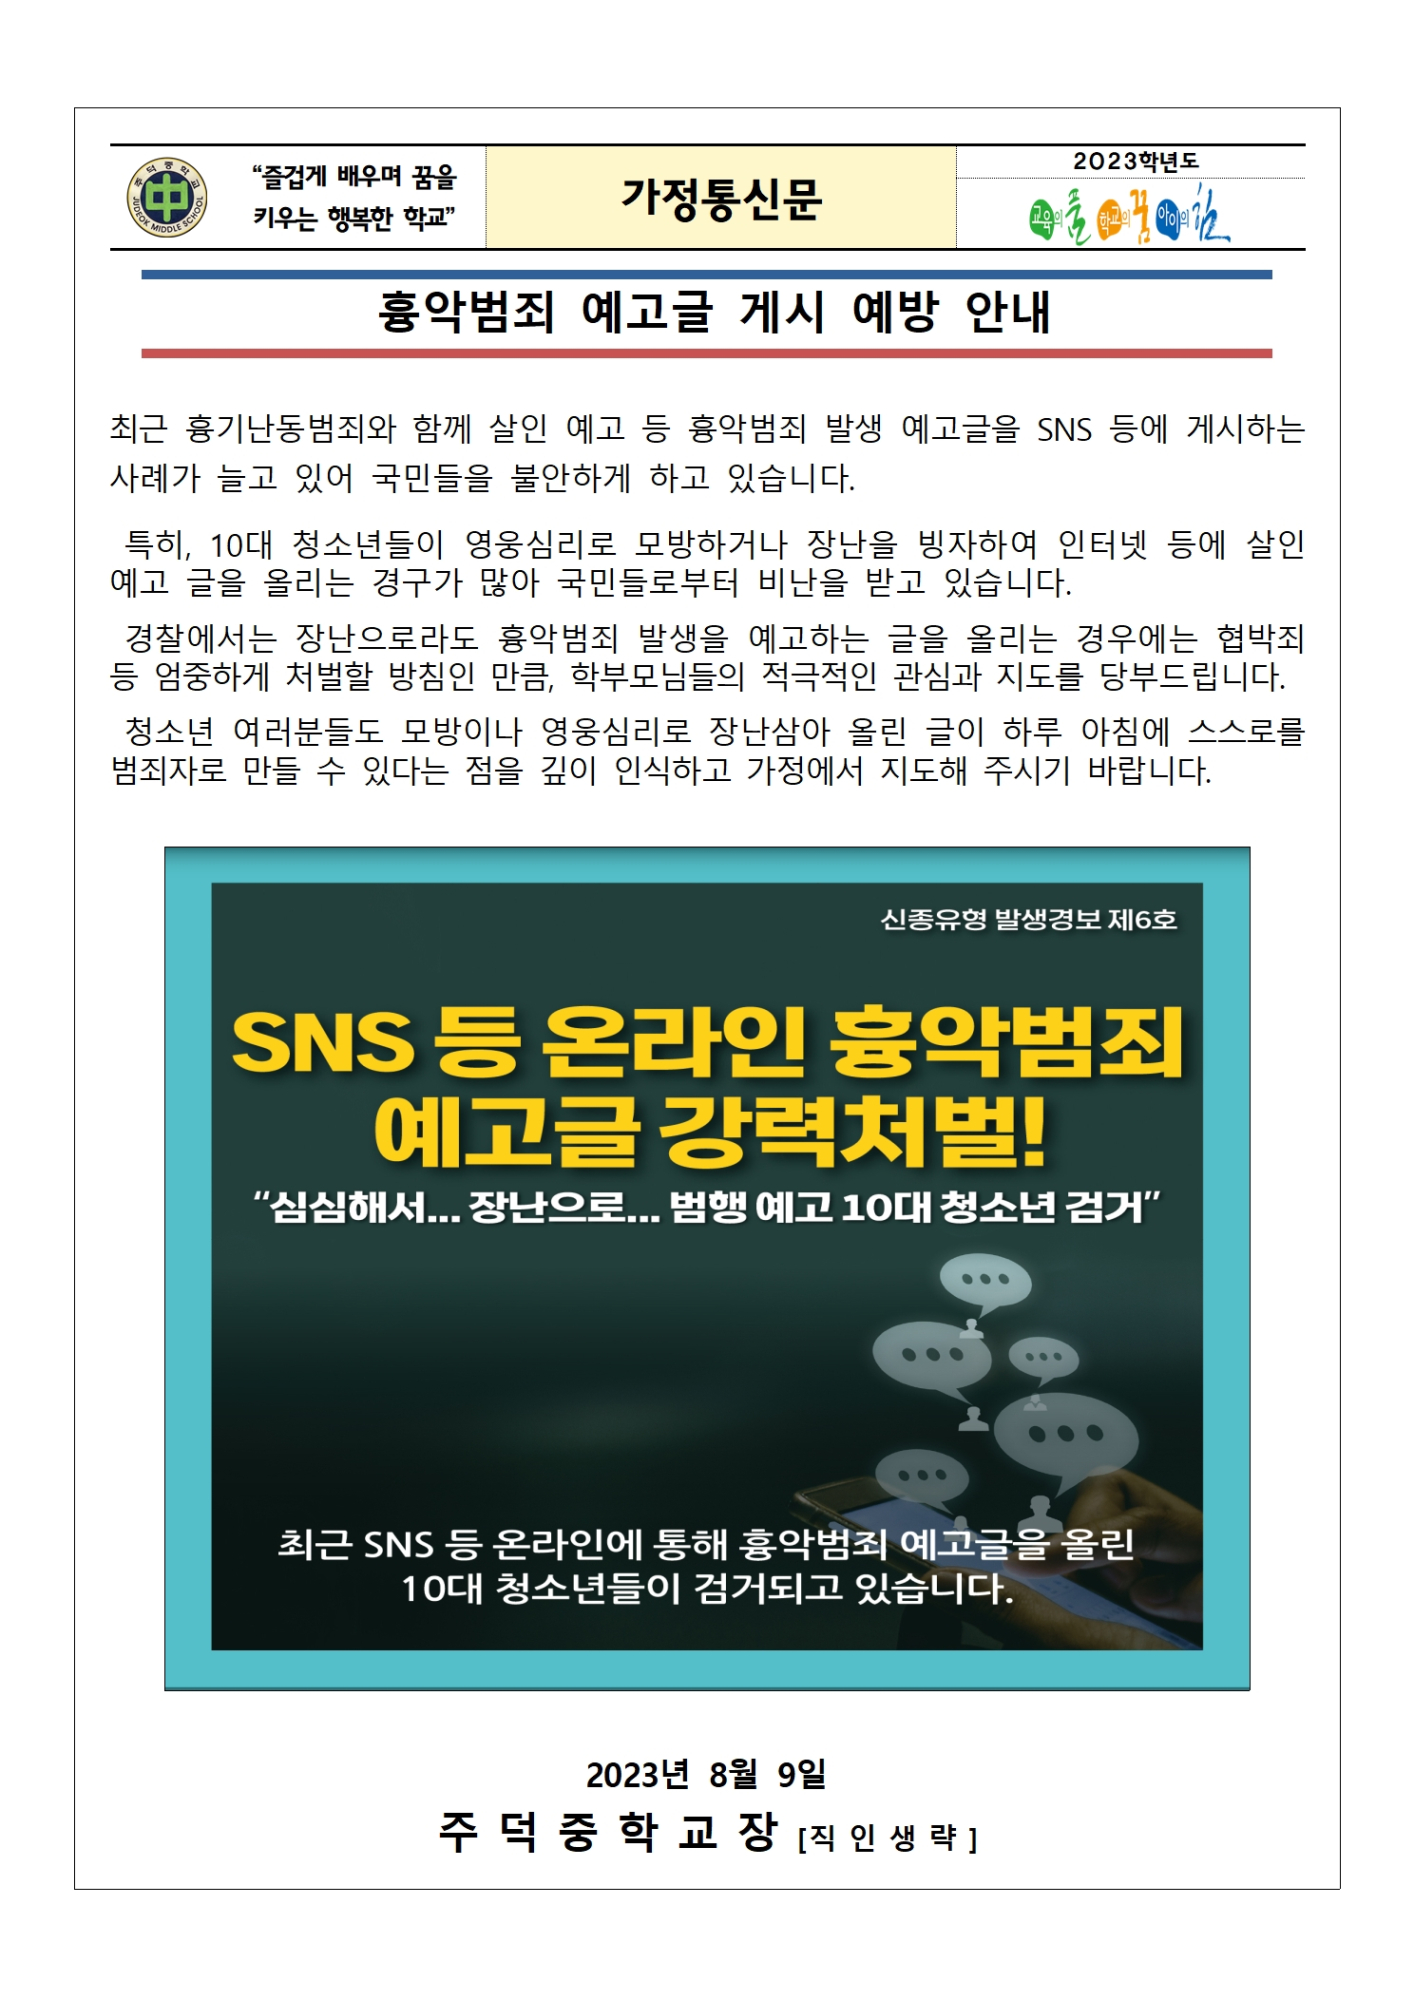 흉악범죄 예고글 게시 예방 가정통신문